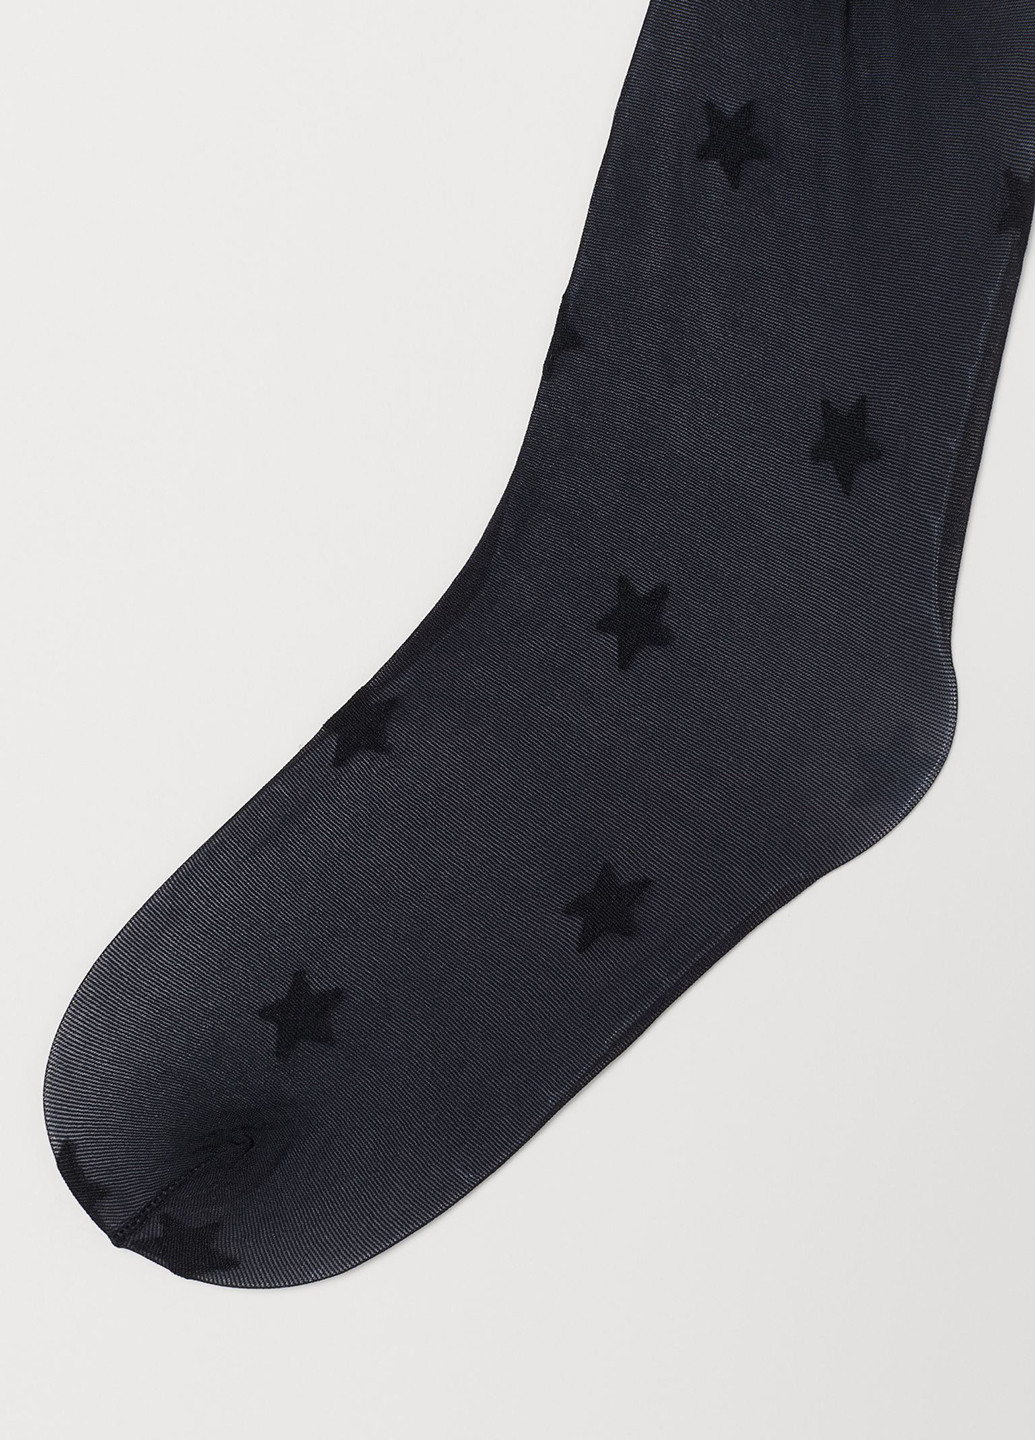 Колготки H&M без уплотненного носка звёзд чёрные повседневные